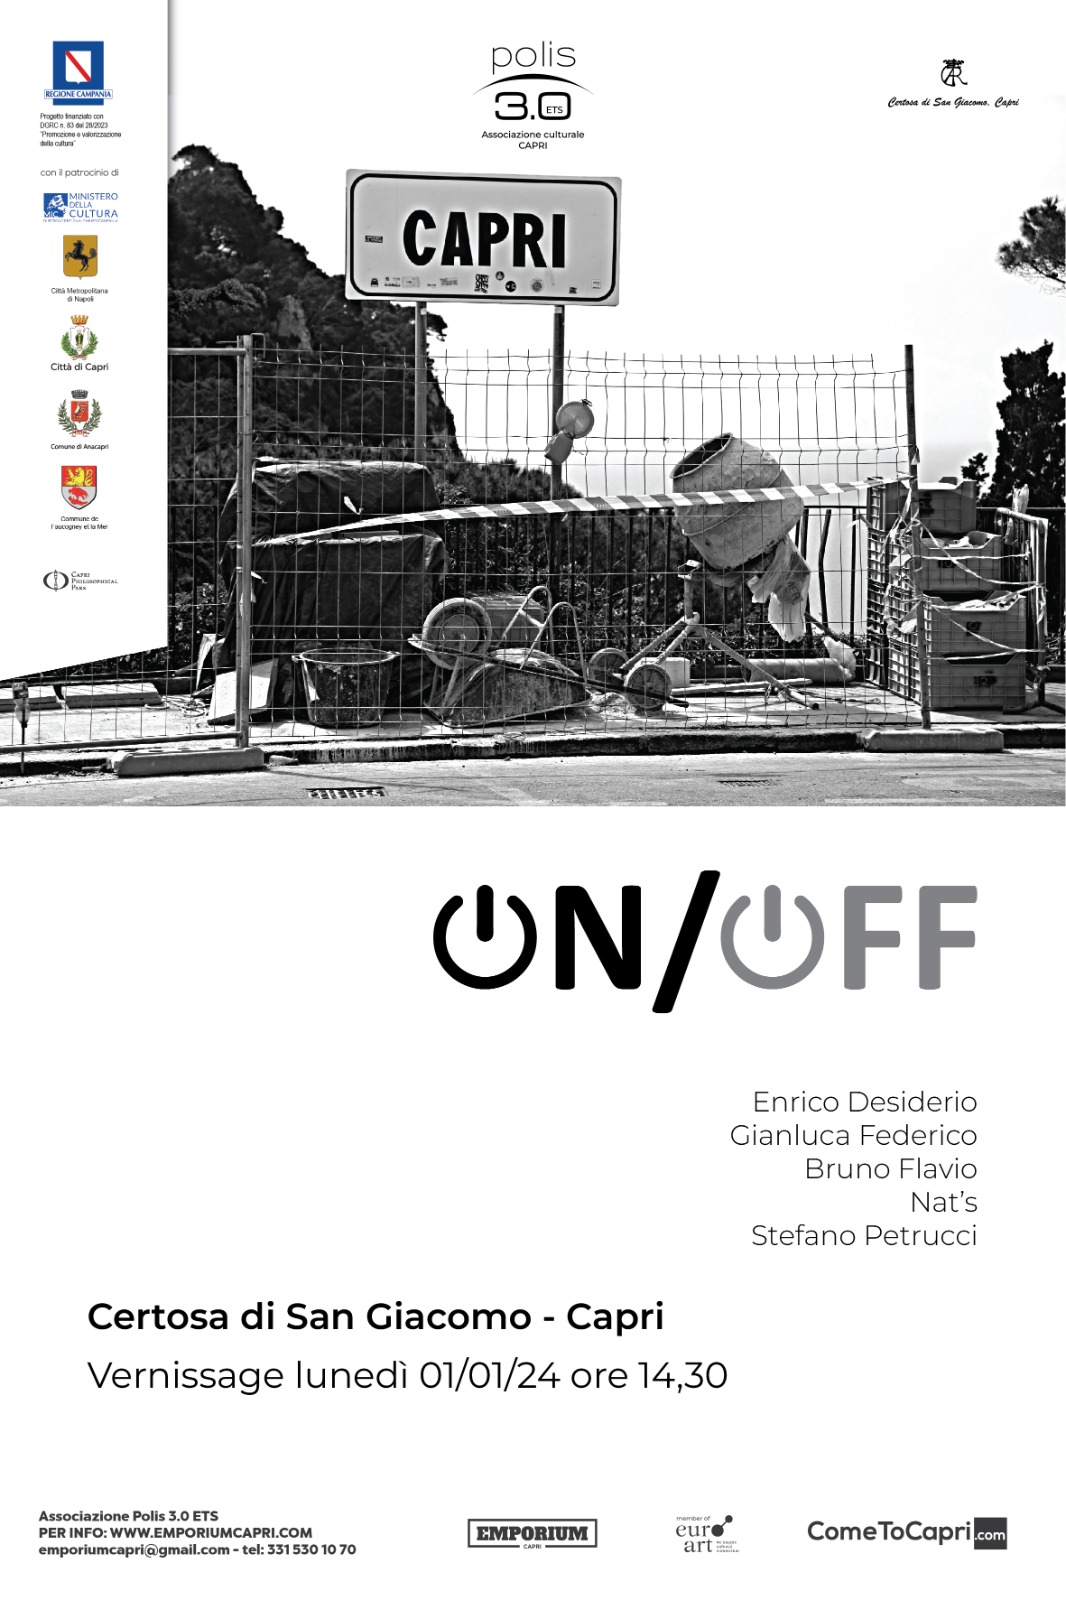 Alla Certosa la mostra “Capri On/Off”, esposizione che punta a una riflessione su turismo, impatto sociale e sostenibilità